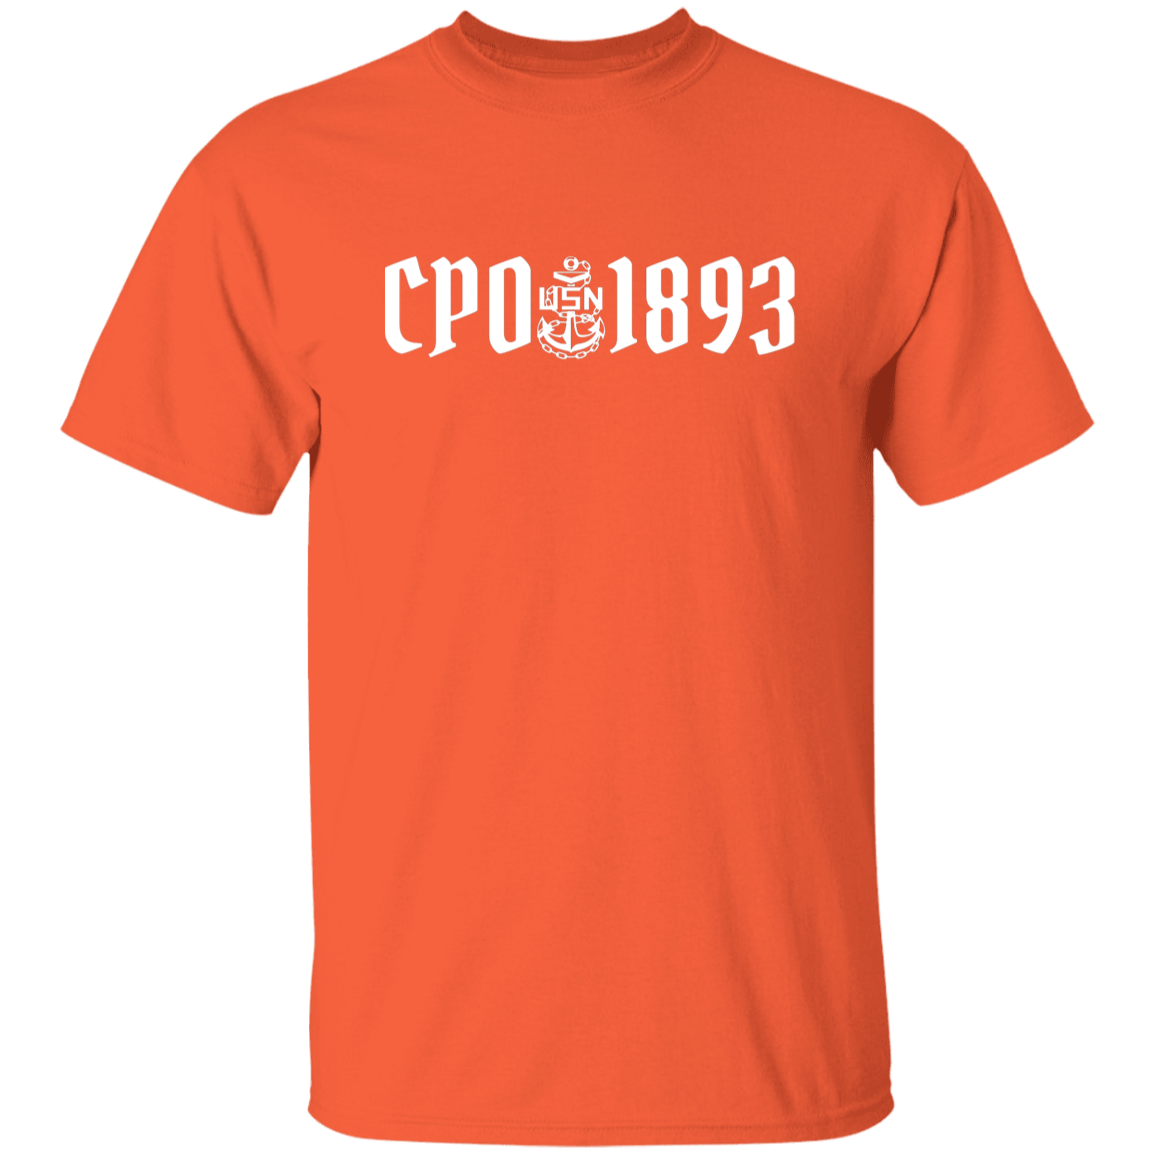 CPO 1893 White 5.3 oz. T-Shirt